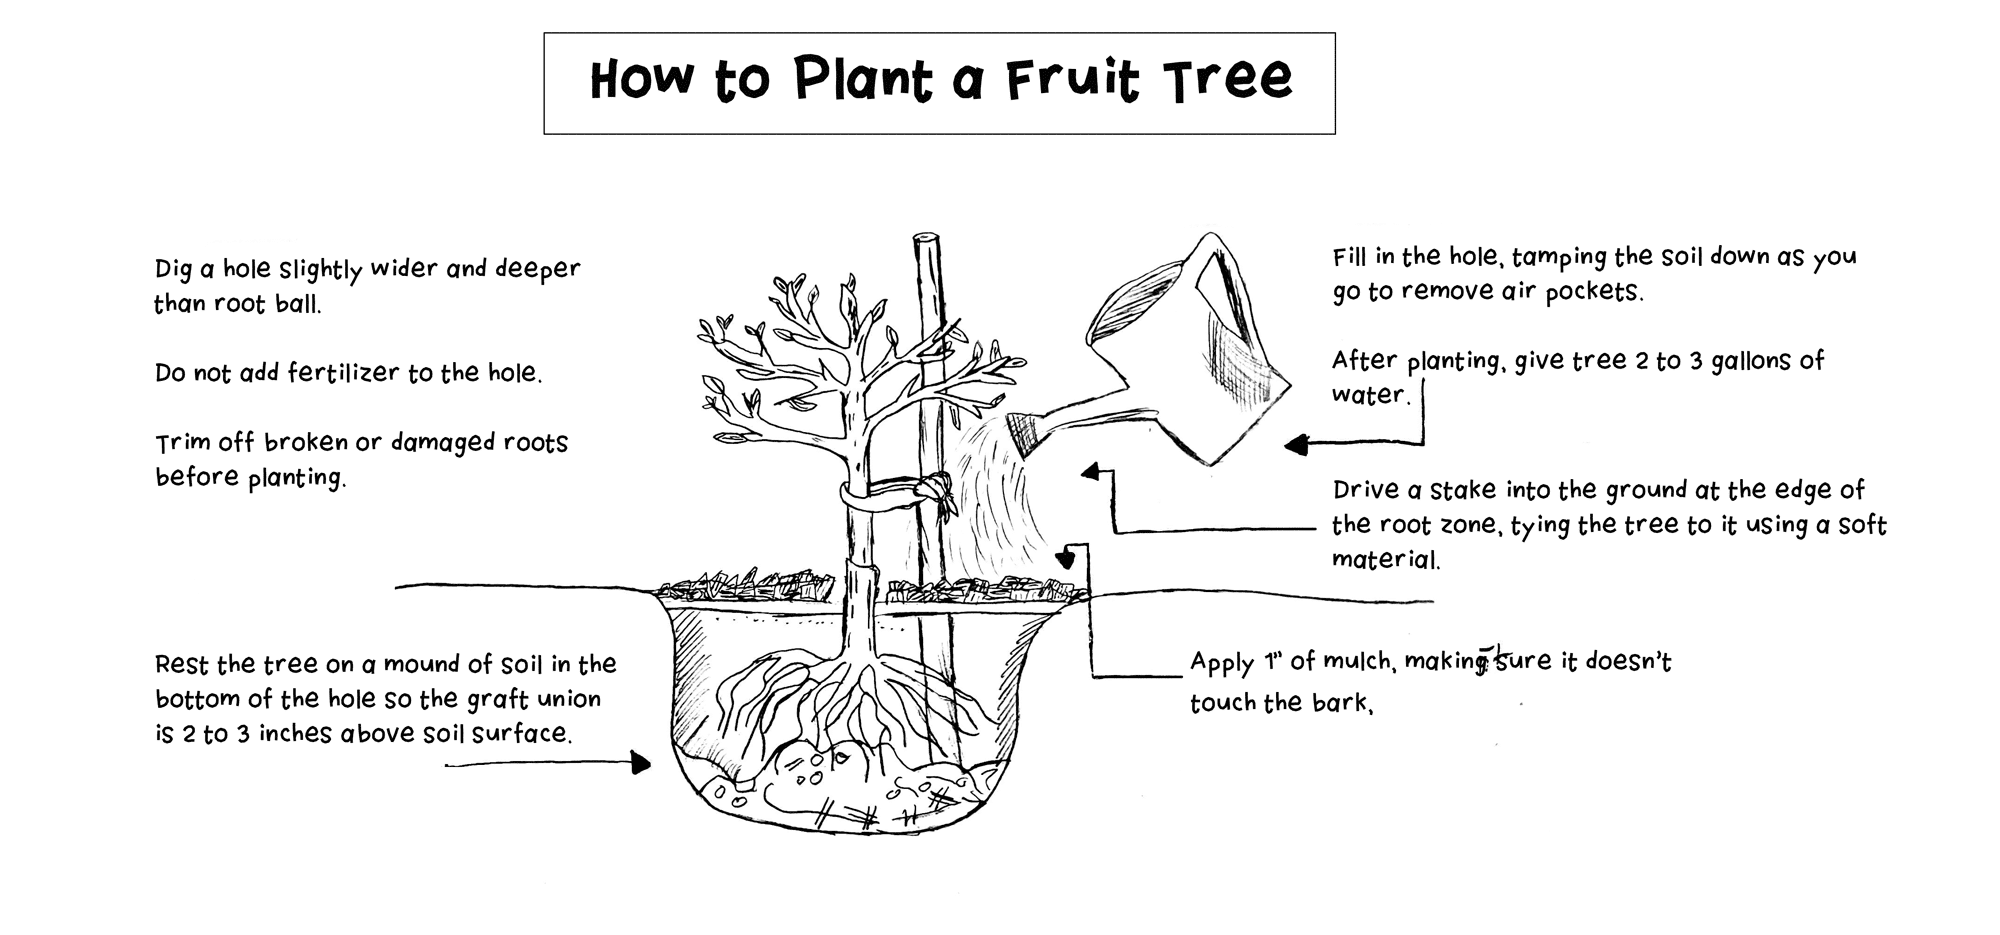 ماذا تفعل لأشجار الفاكهة